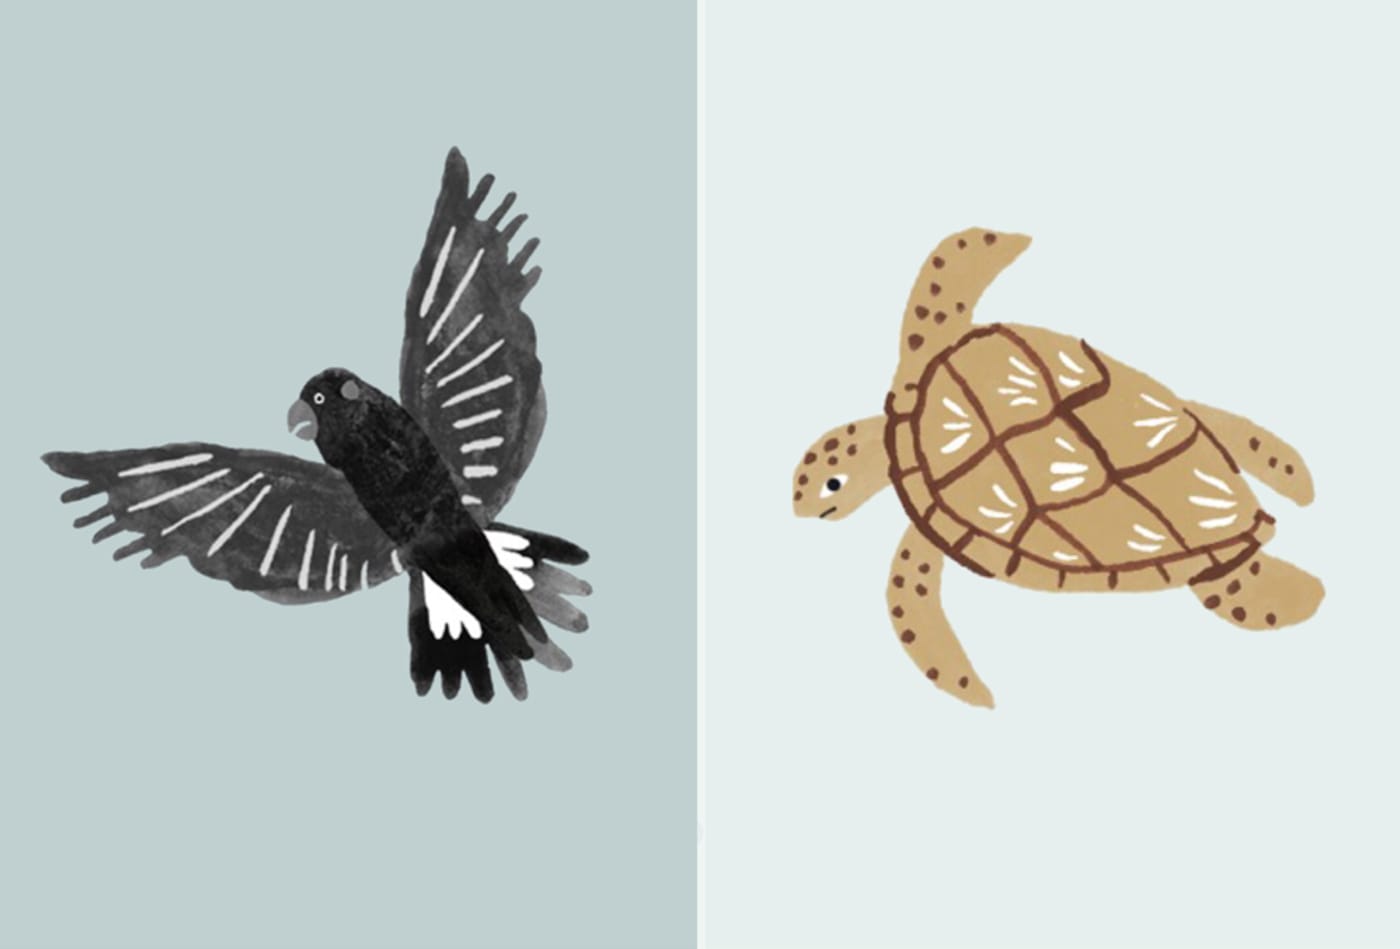 Black cockatoo and turtle illustration